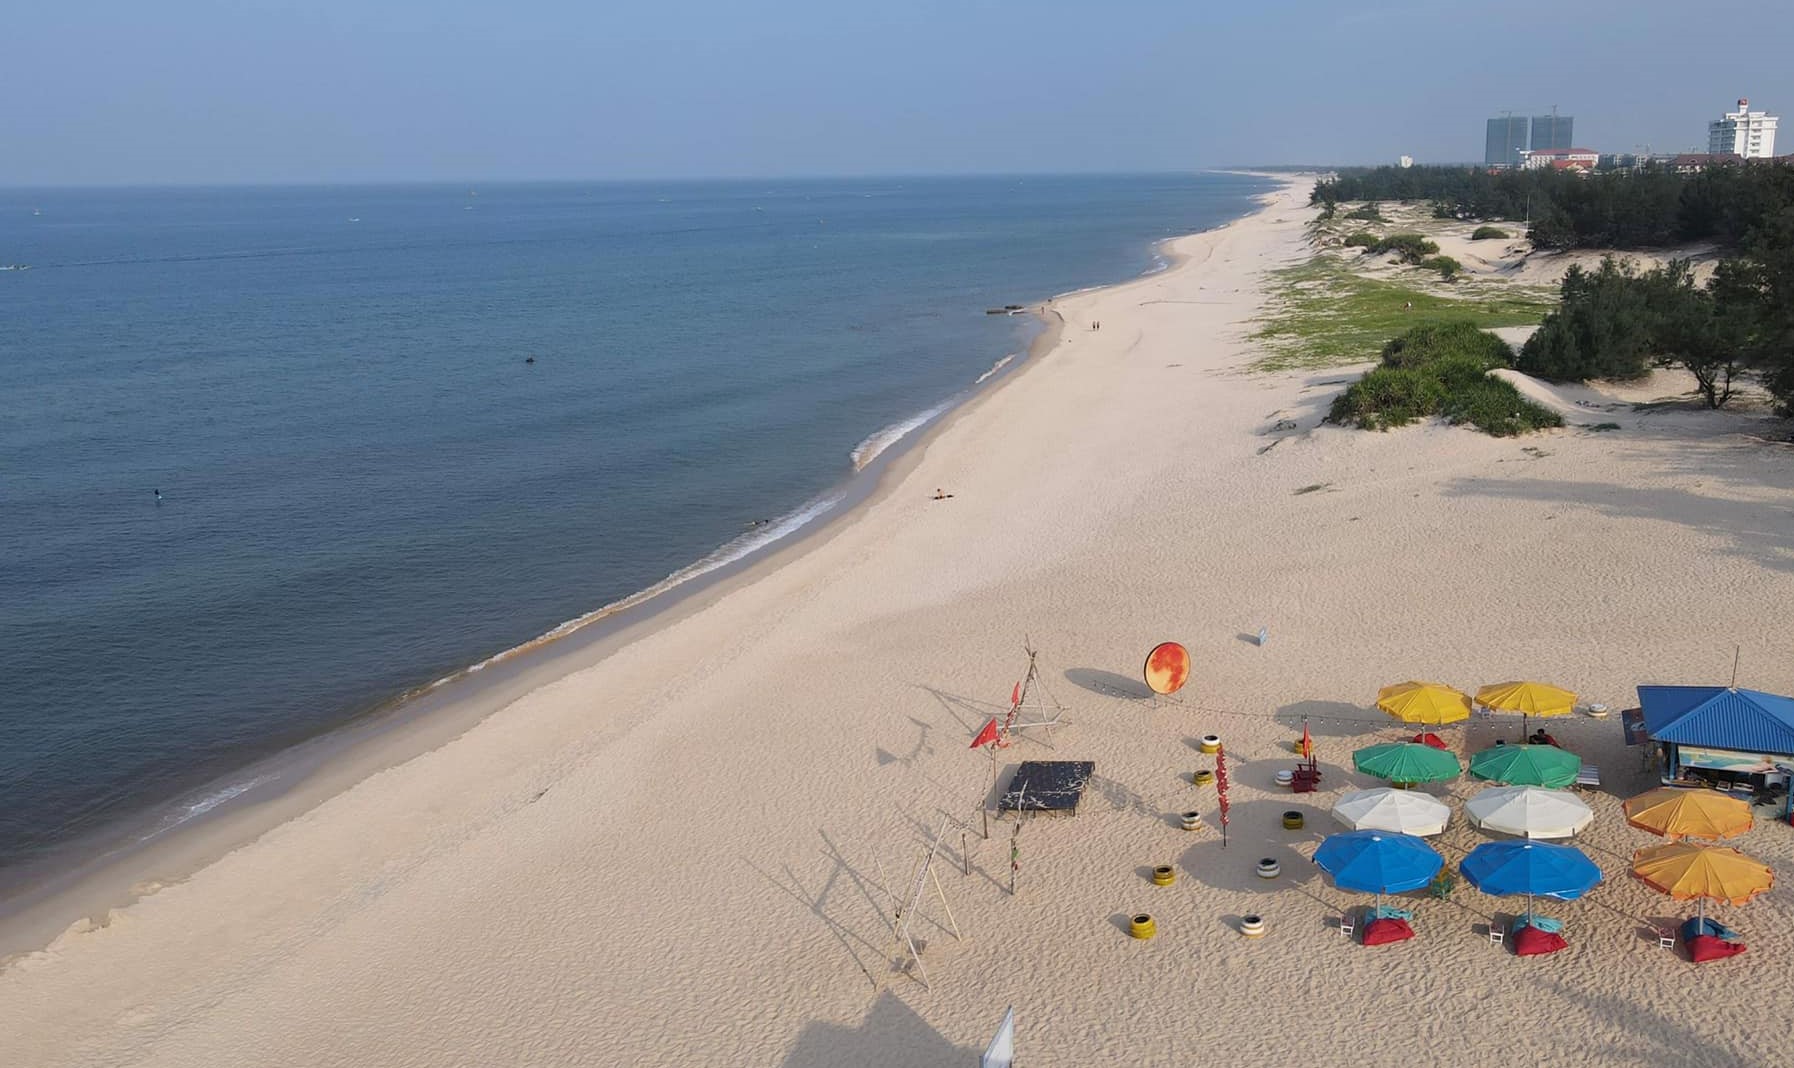 Bãi biển Bảo Ninh mang vẻ đẹp hoang sơ, bờ biển dài cùng những bãi cát trắng mịn.